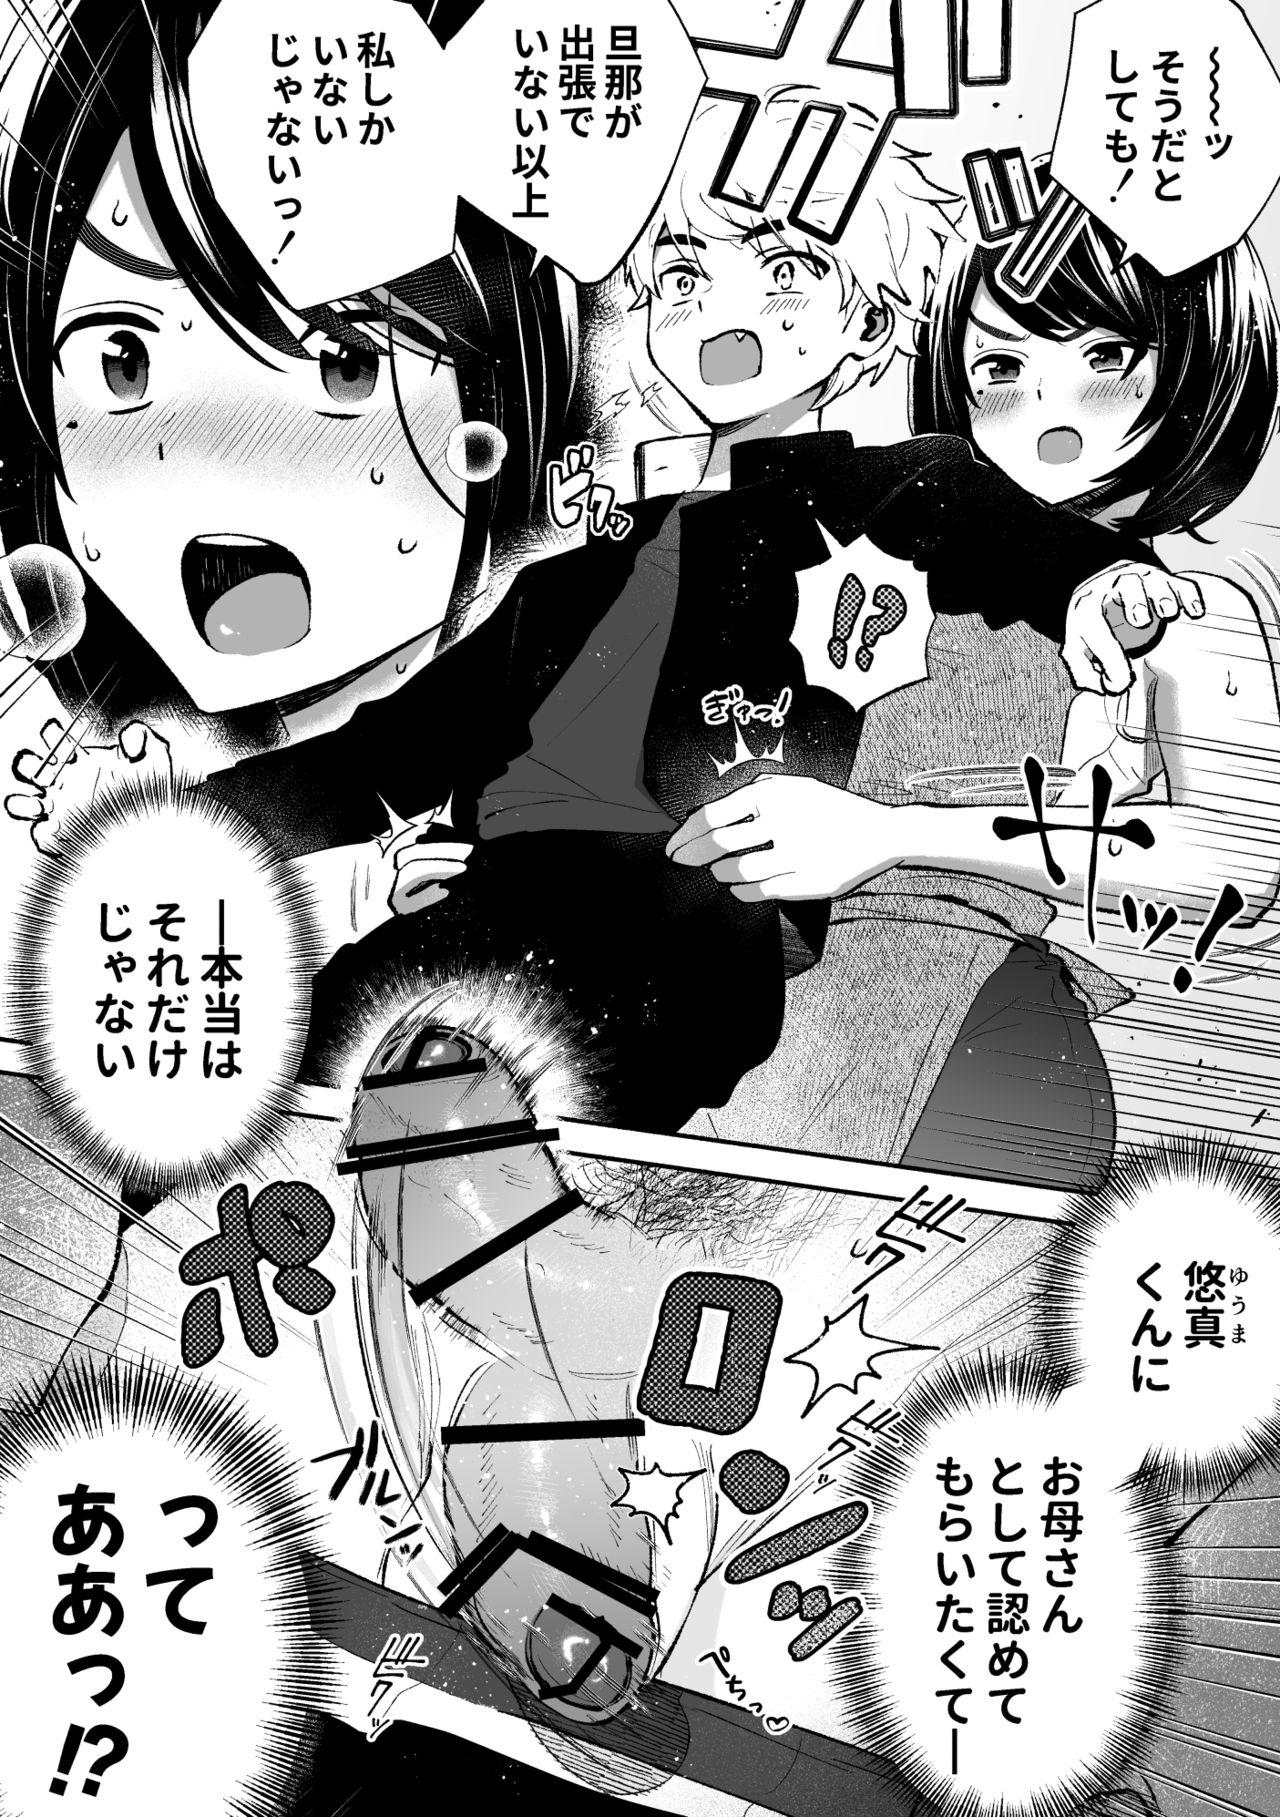 Behind Houkei da to Gakkou Sotsugyou Dekinai Houritsu nano de Wakai Okaa-san ga Musuko no Chinpo o Muite mita. - Original Bottom - Page 6